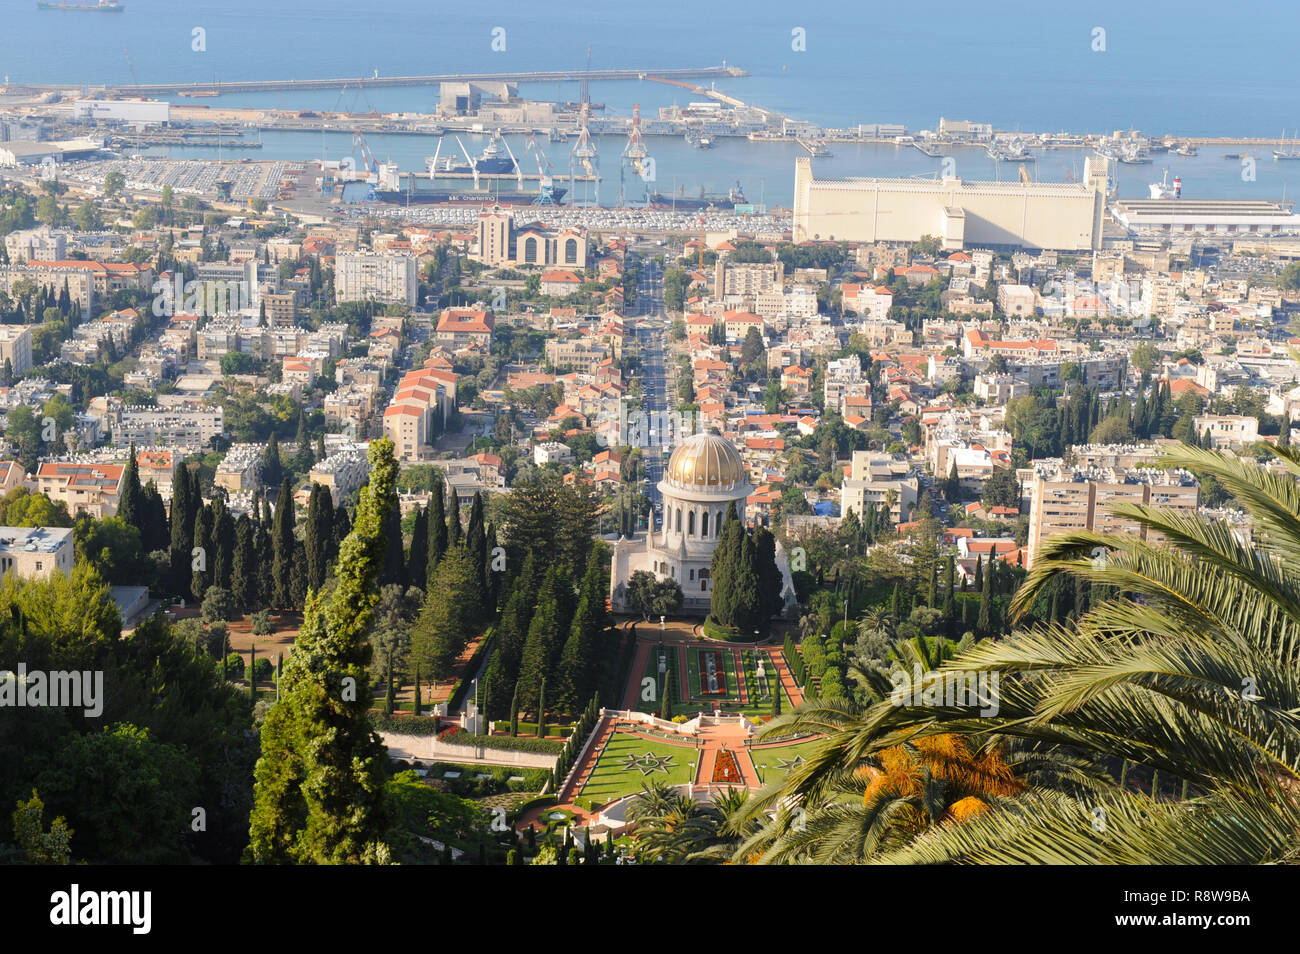 Die traumhafte Landschaft des alten historischen Hafen von Haifa Stadt im Norden von Israel an den Hängen des Karmel Berge und das Mittelmeer. Stockfoto